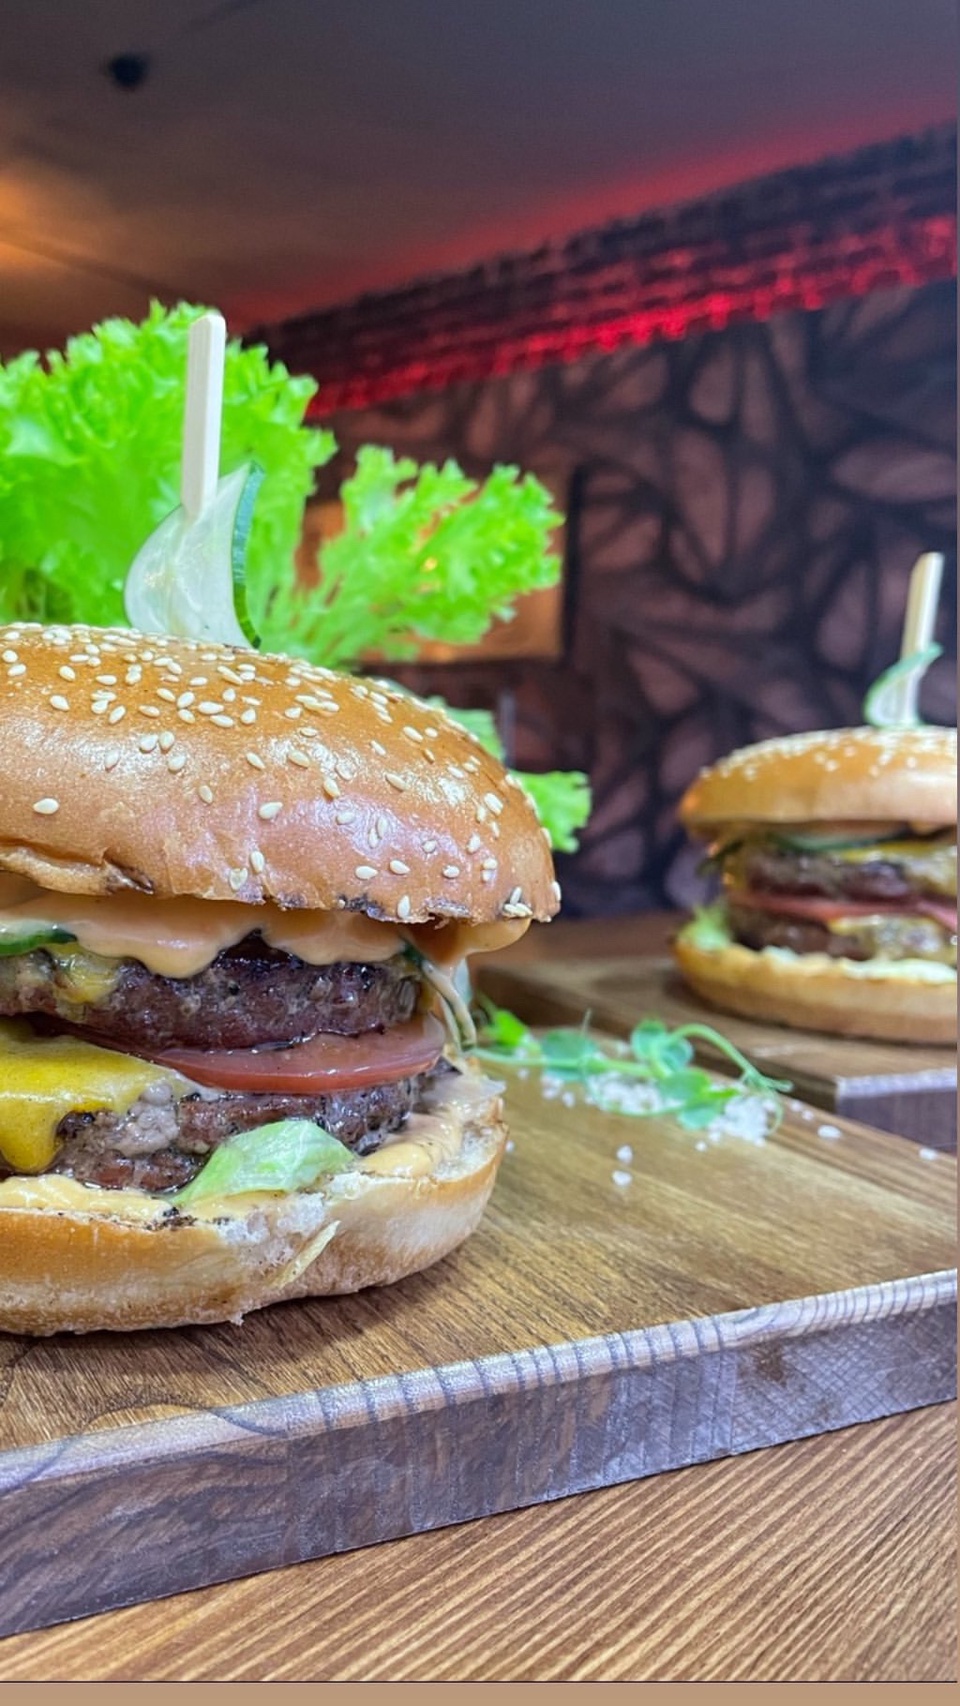 Дабл чизбургер - 550 ₽, заказать онлайн.